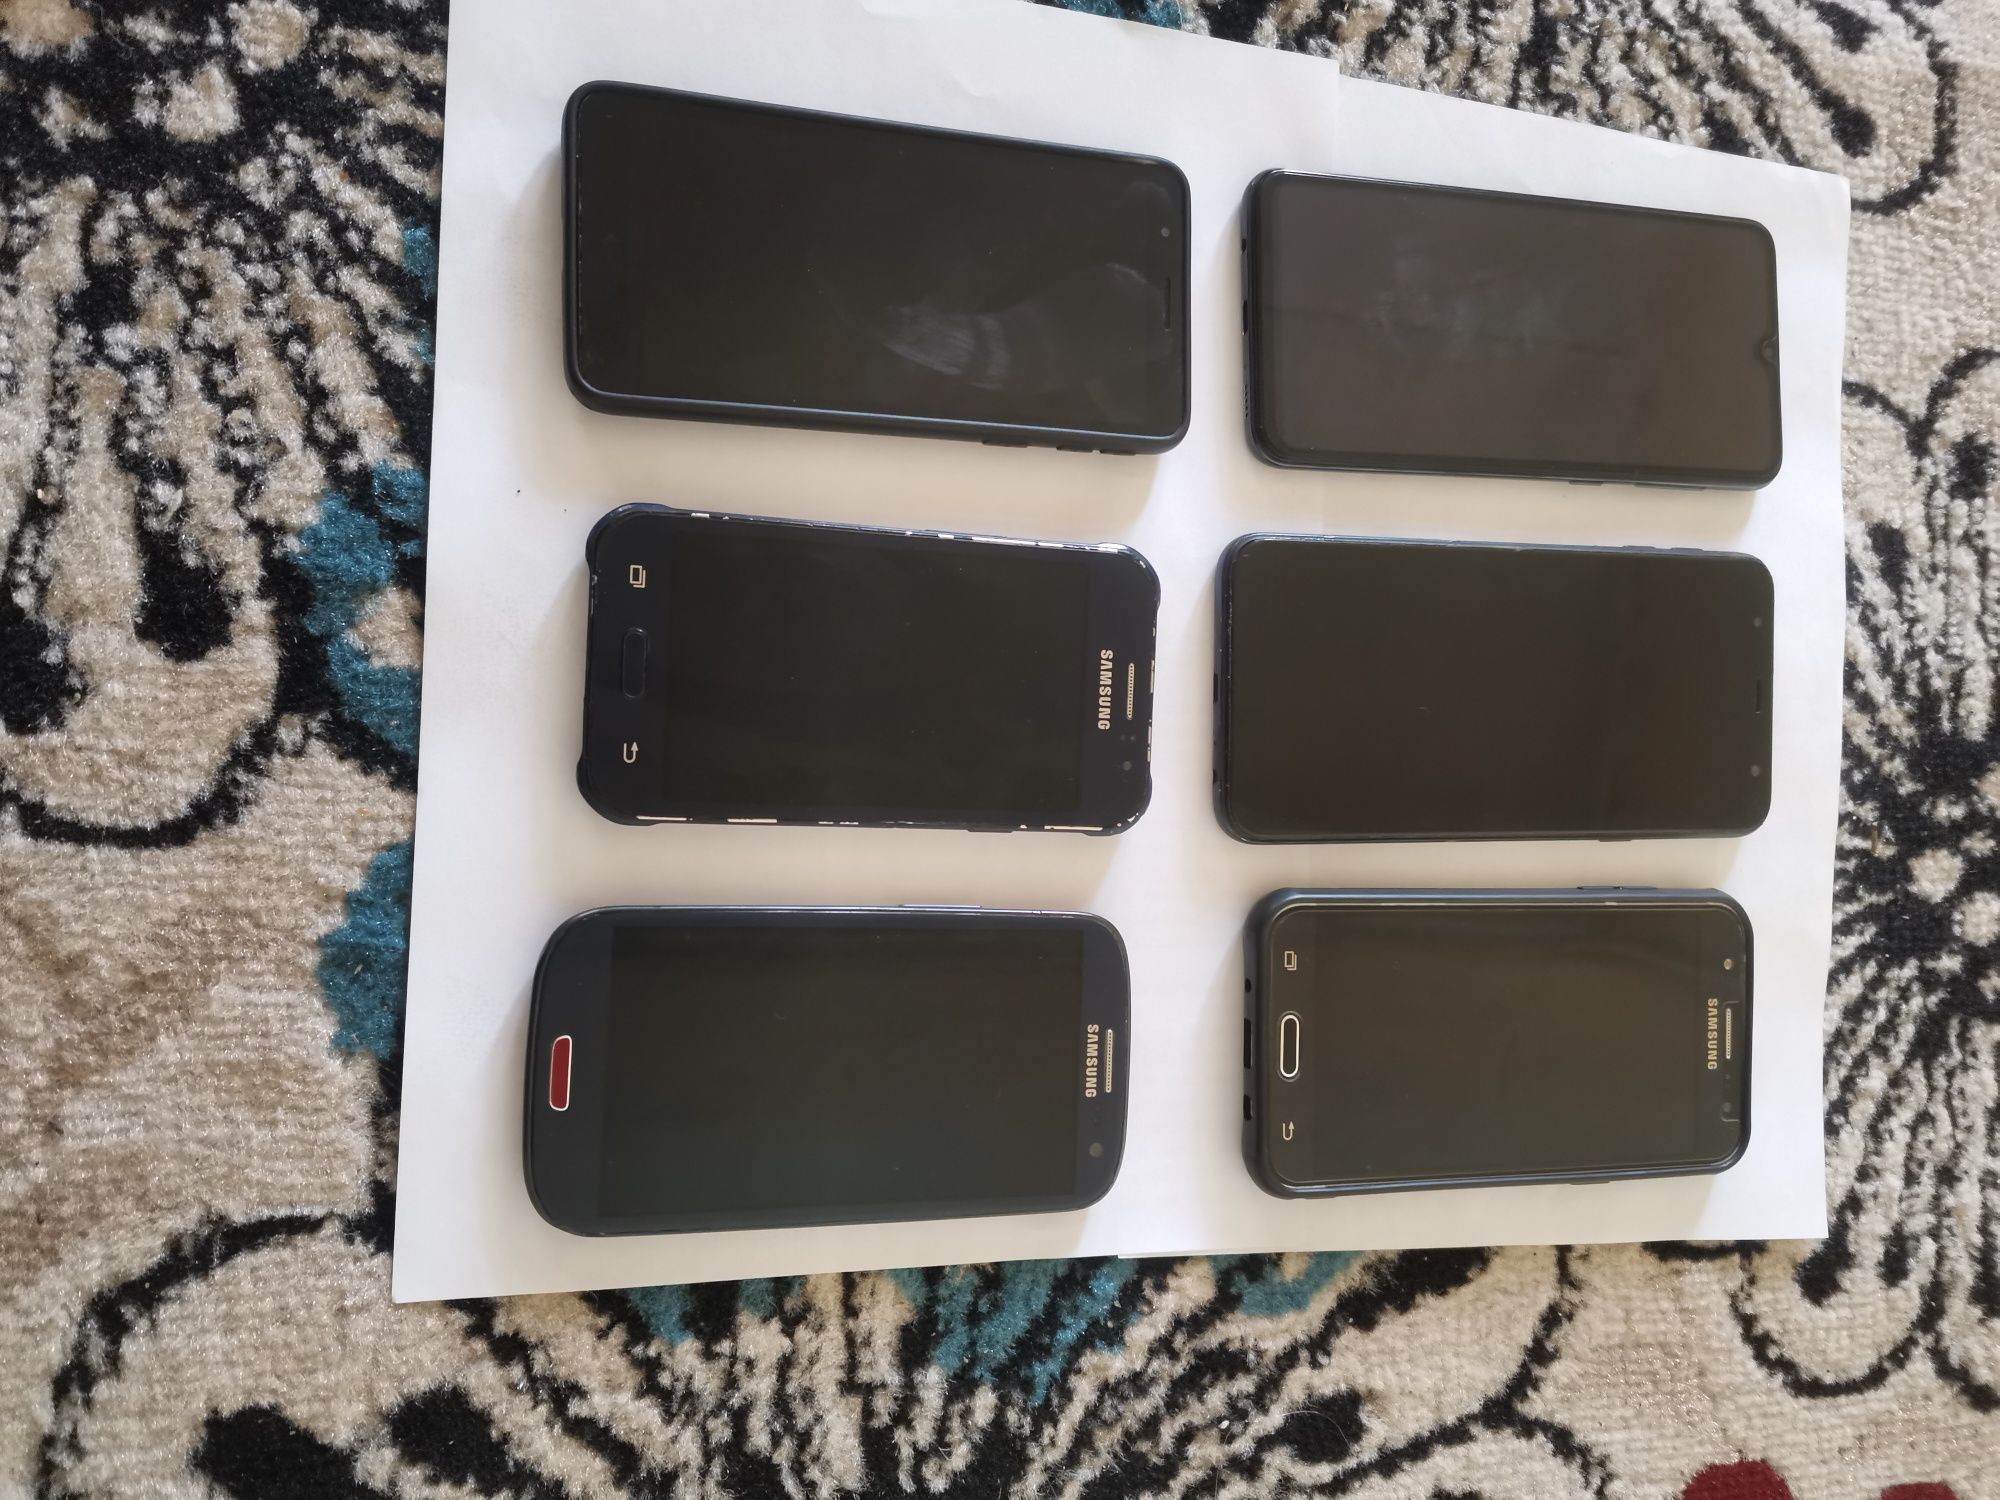 Samsung telefonlar xollati ideal Buxoro Shahar pulkerak srochni arzon